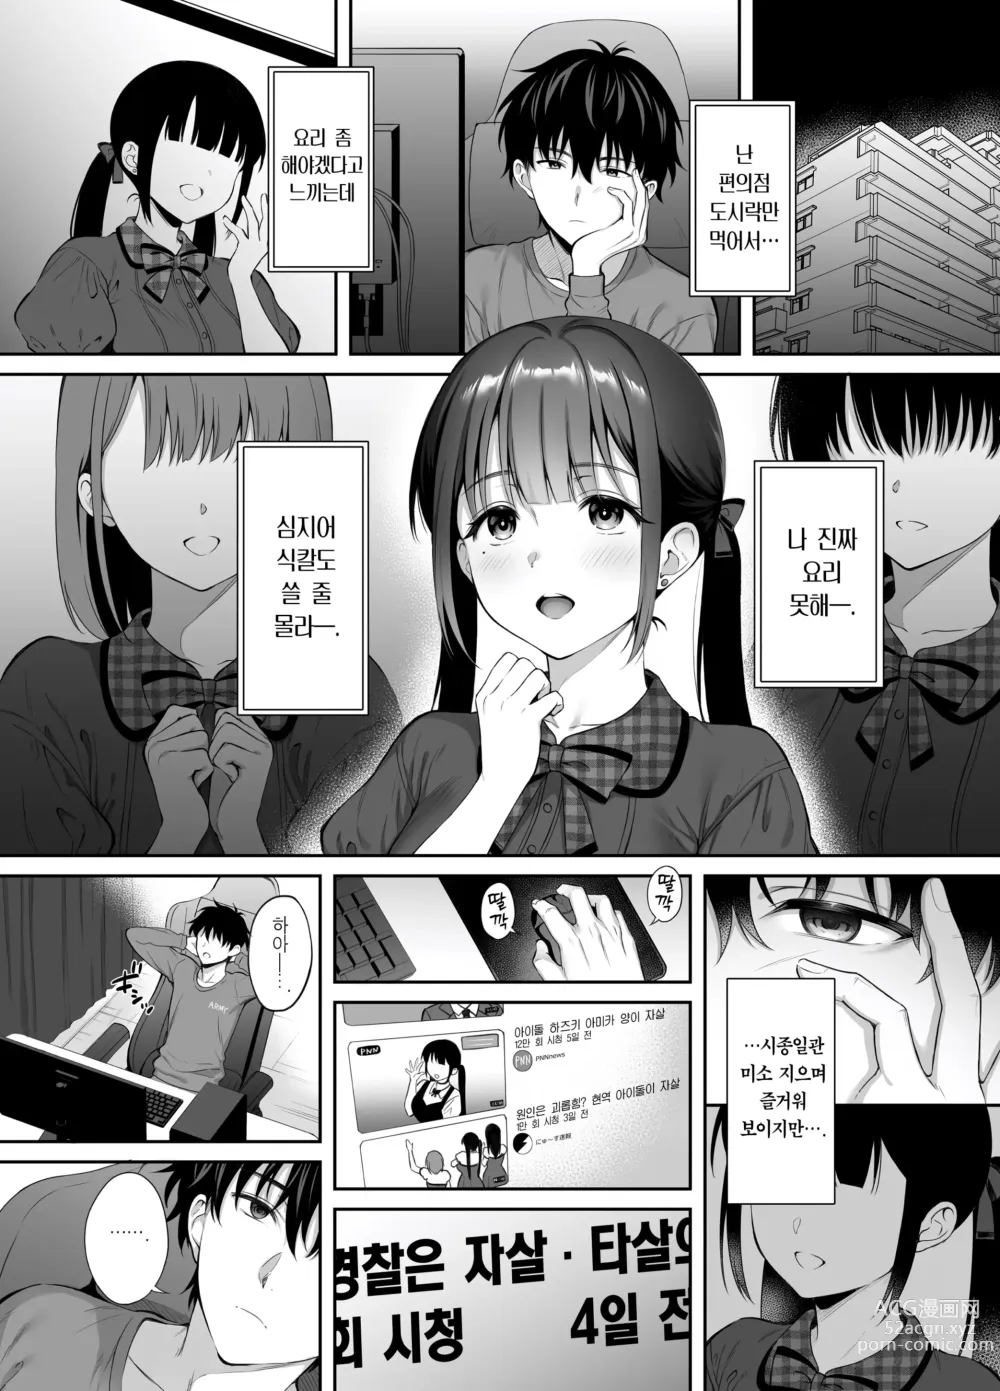 Page 7 of doujinshi 폐허에서 지뢰녀랑 밤새 질내사정 섹스한 이야기 2 (decensored)